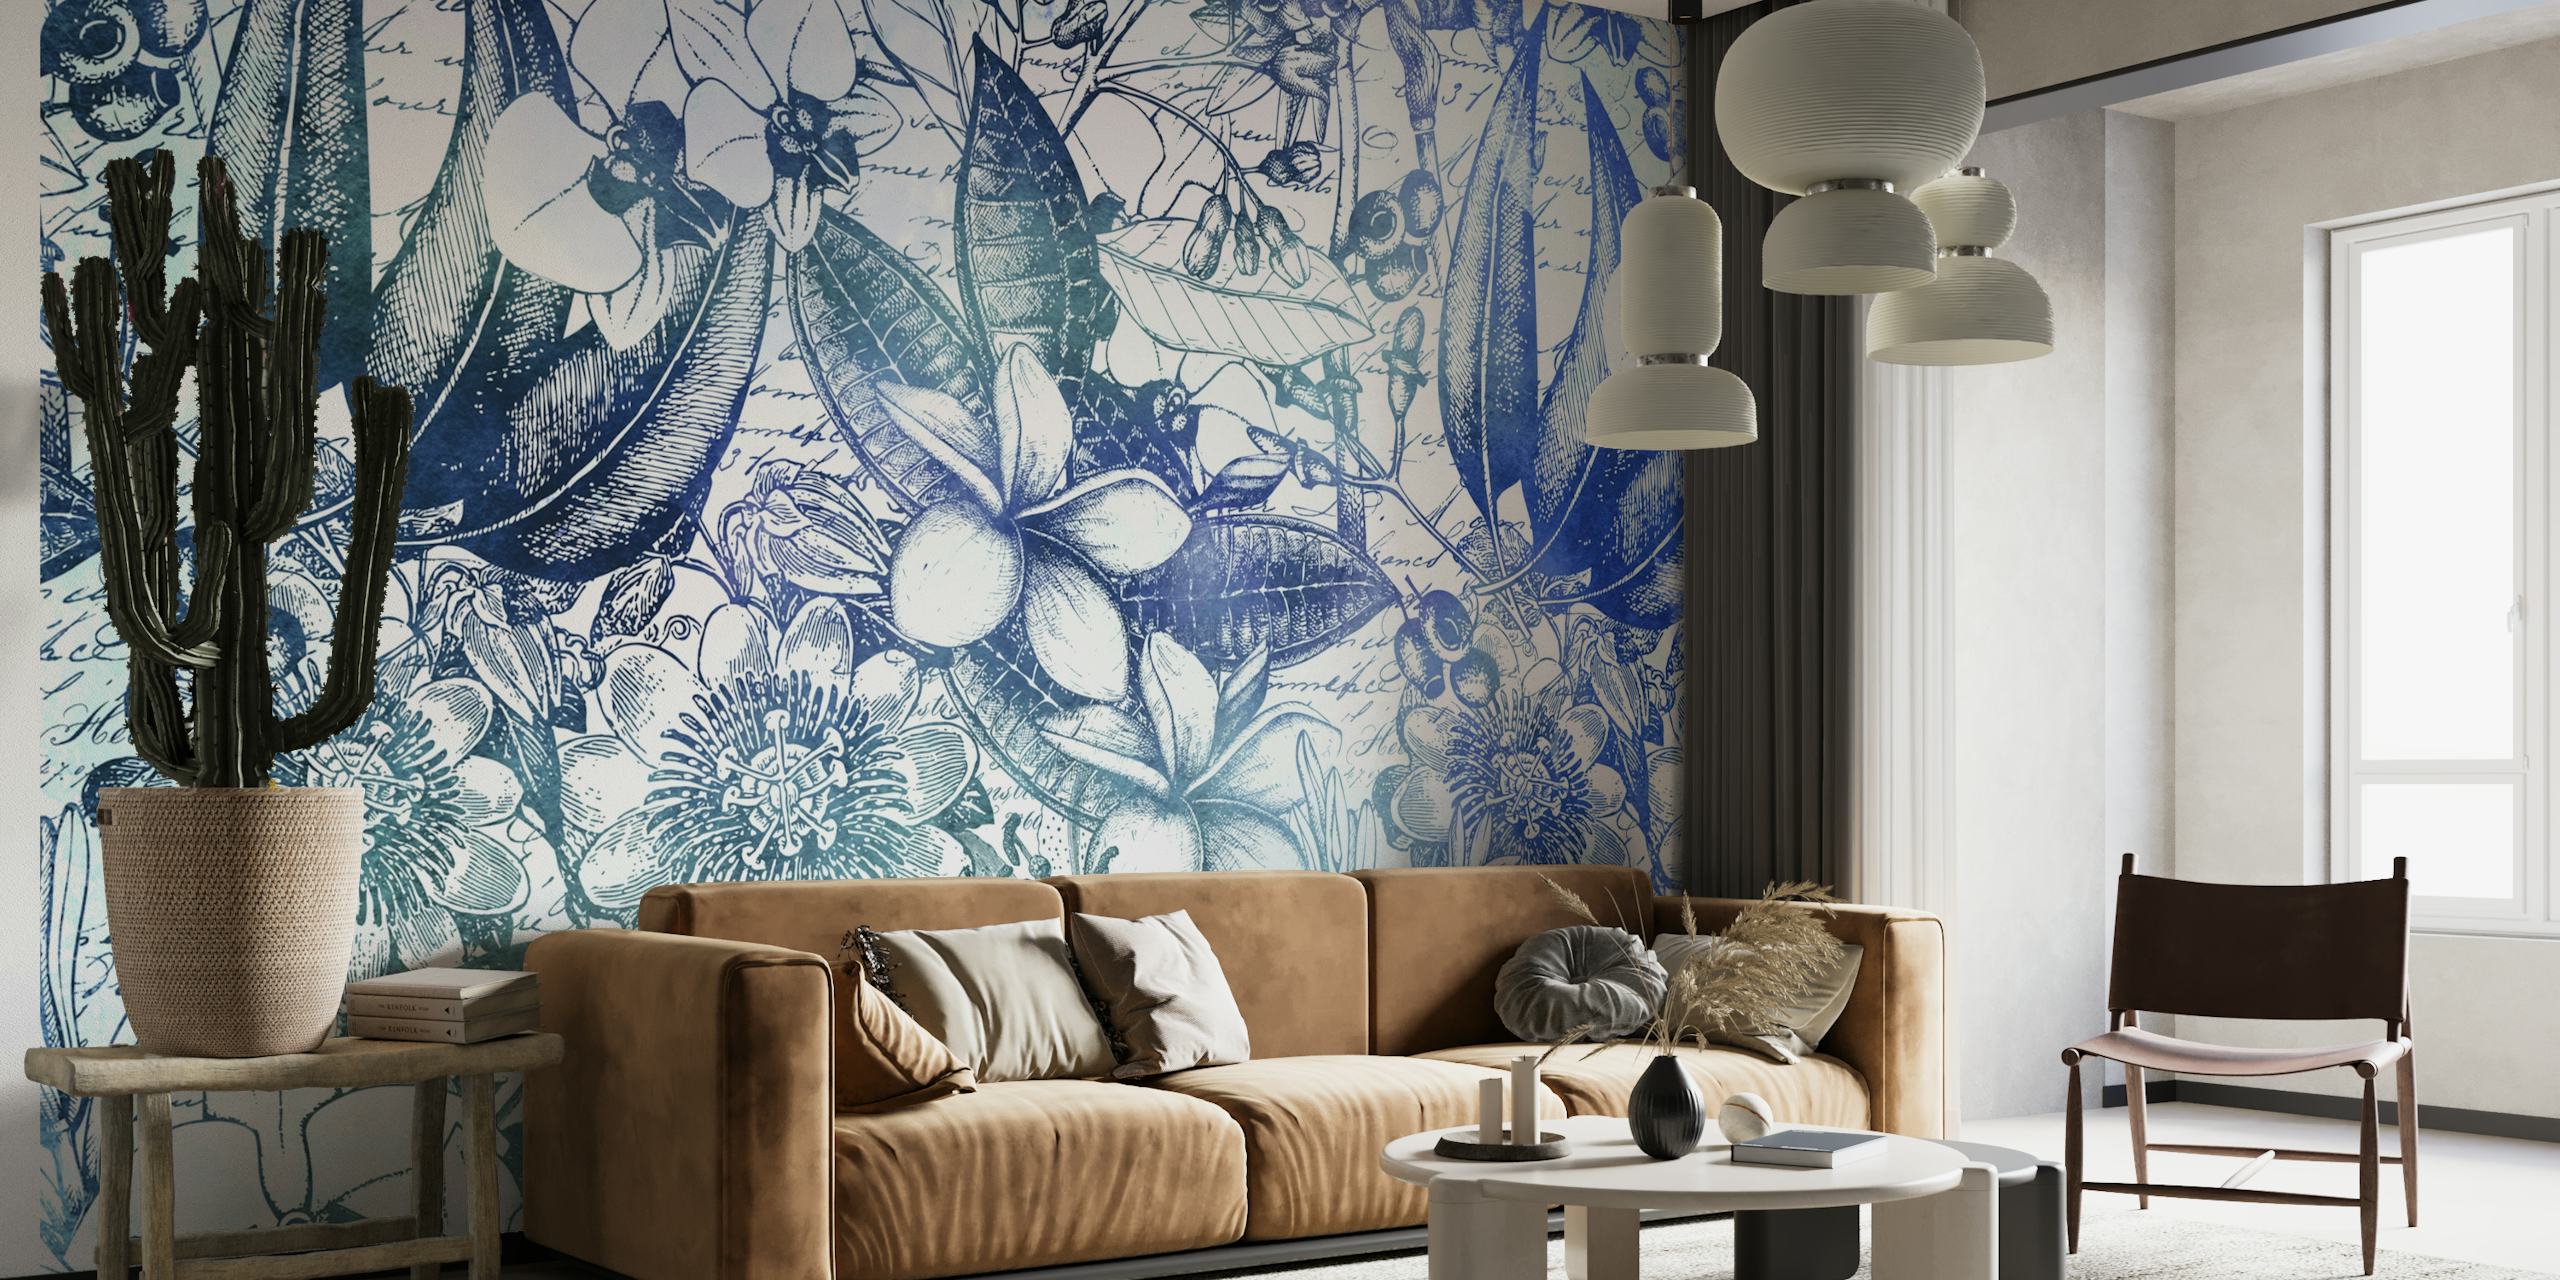 Botanische muurschildering in vintage-stijl met blauwe tinten met bladeren, vogels en bloemen